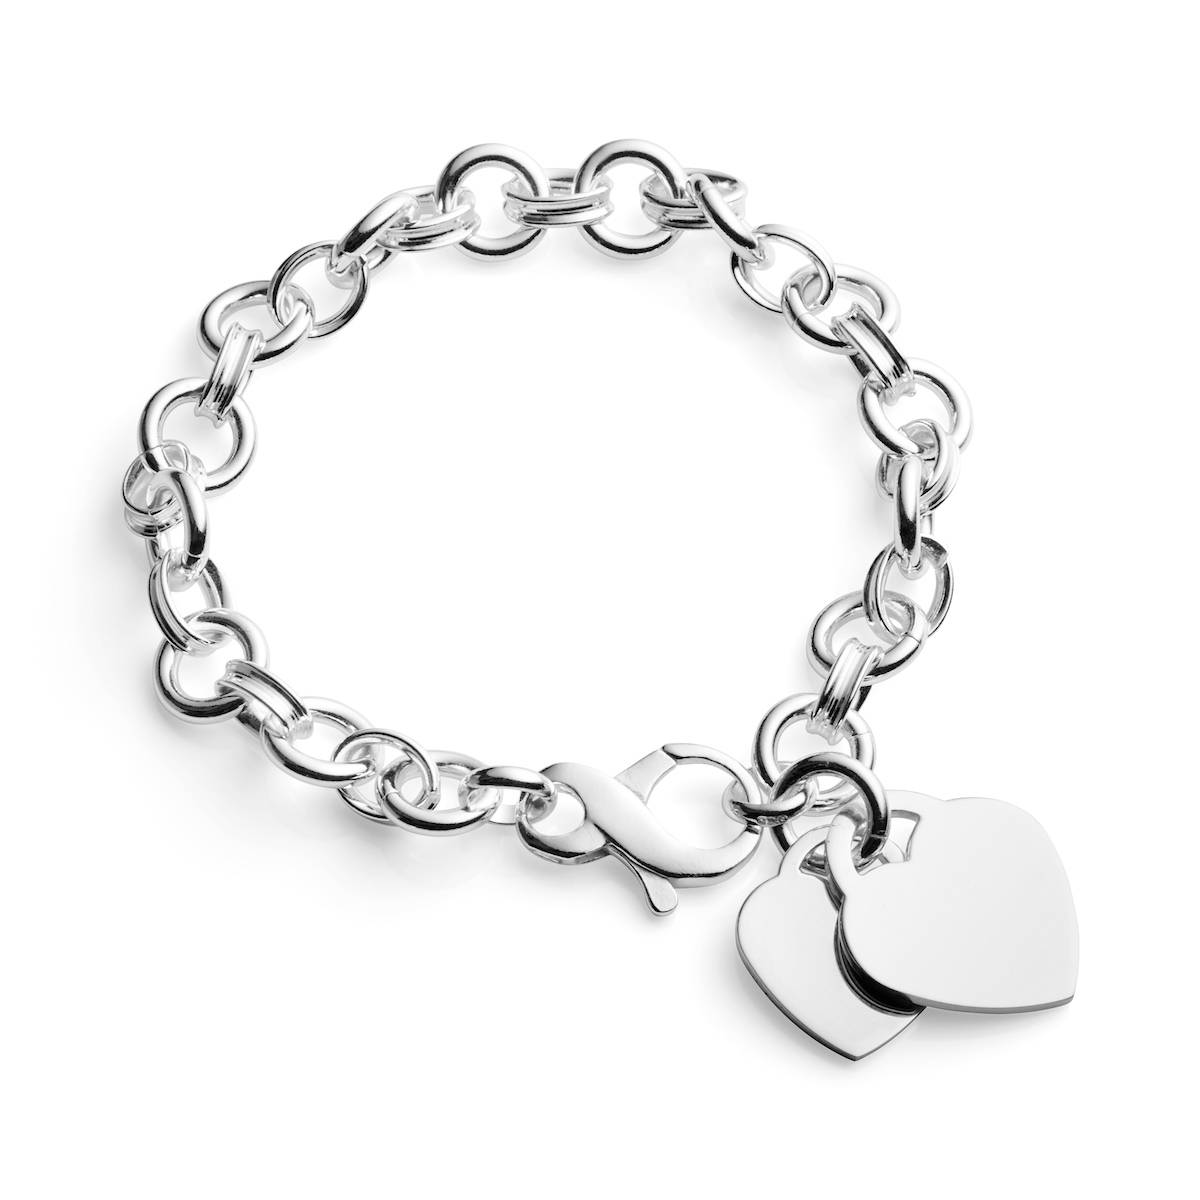 Shop 925 silver bracelet for women online by ornatejewels.